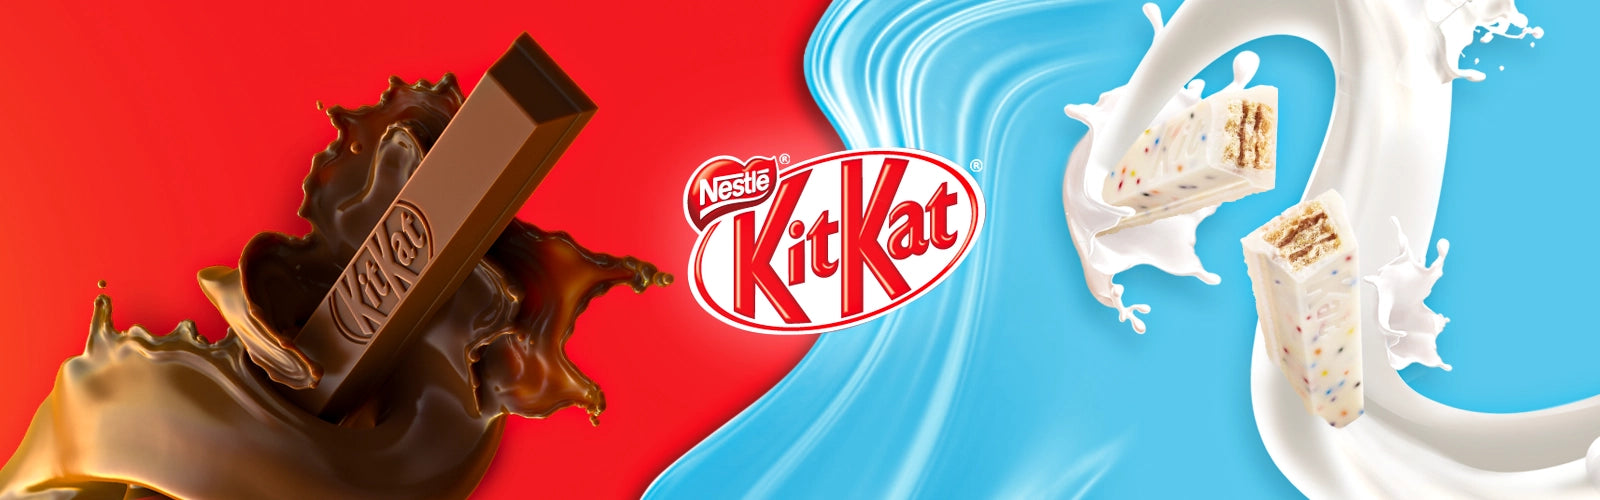 Kit Kat banner